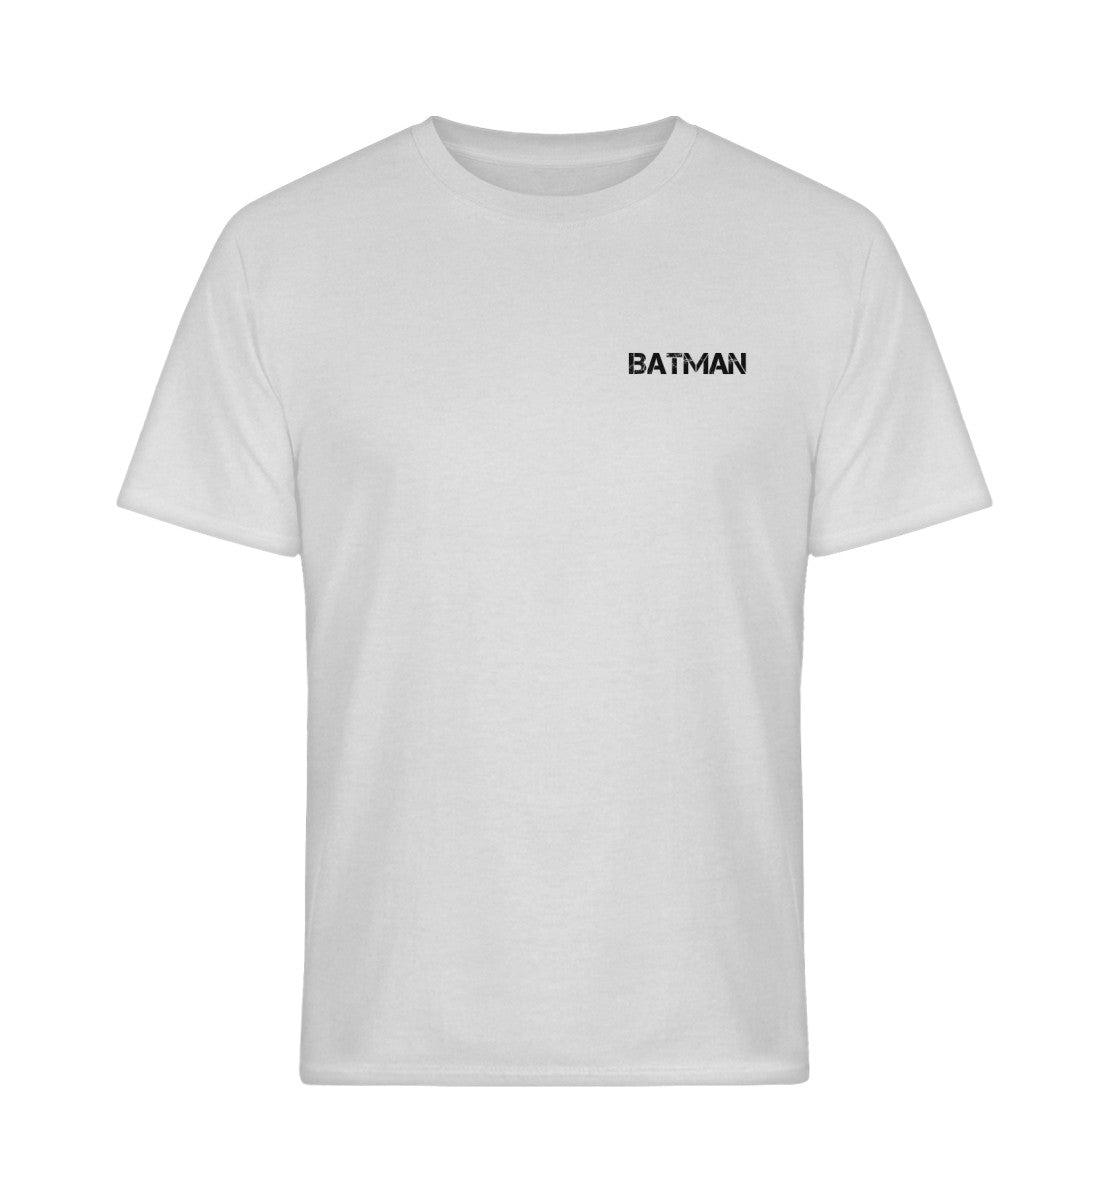 BaTMaN Supporter Shirt   - Softstyle T-Shirt